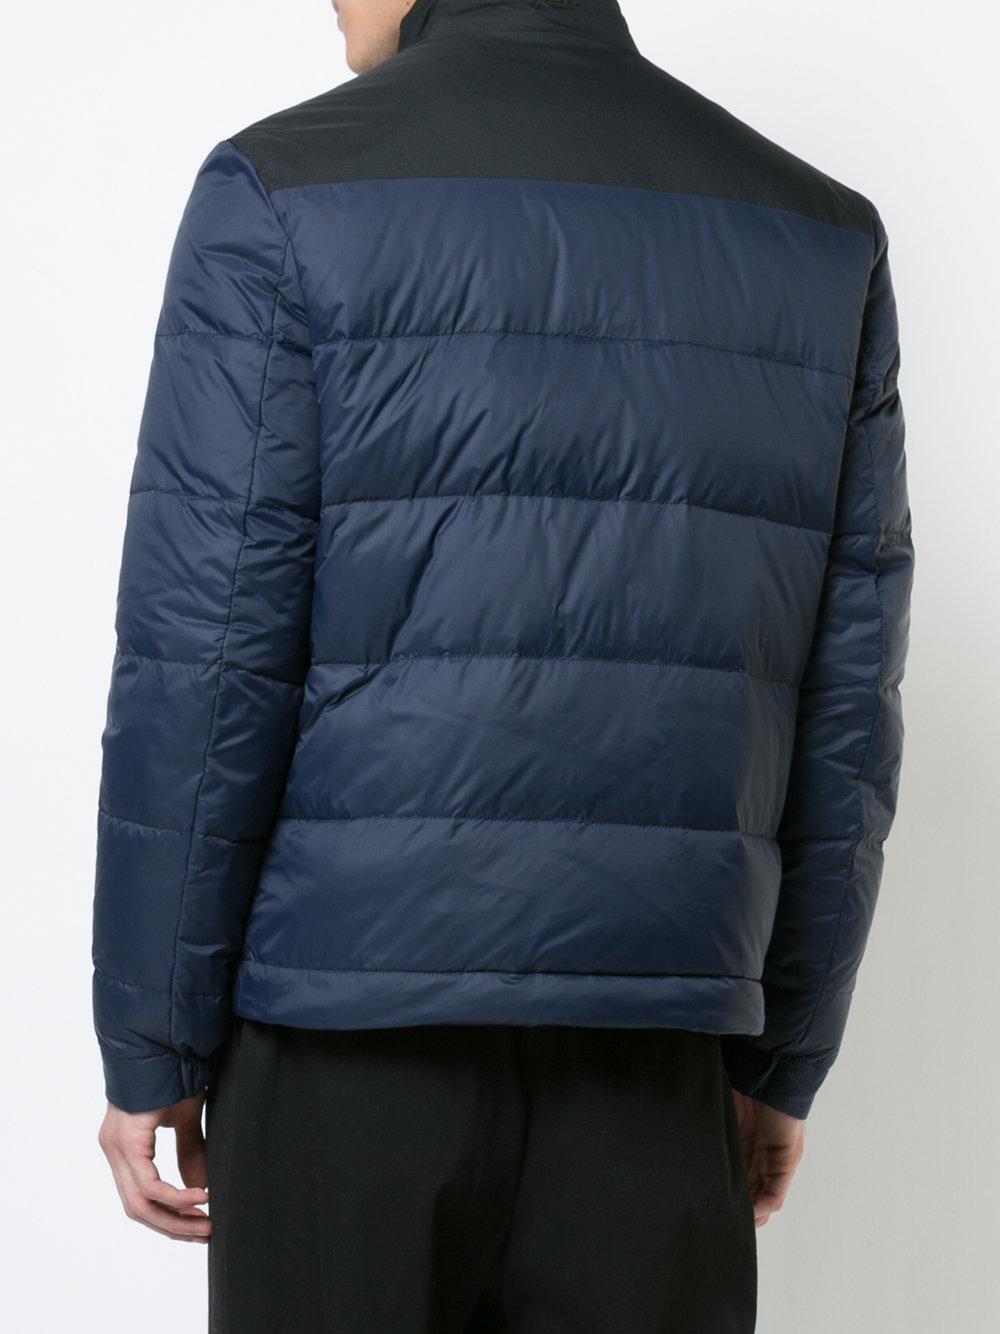 Aztech Mountain Synthetic Elk Mountain Puffer Jacket in Blue for Men - Lyst